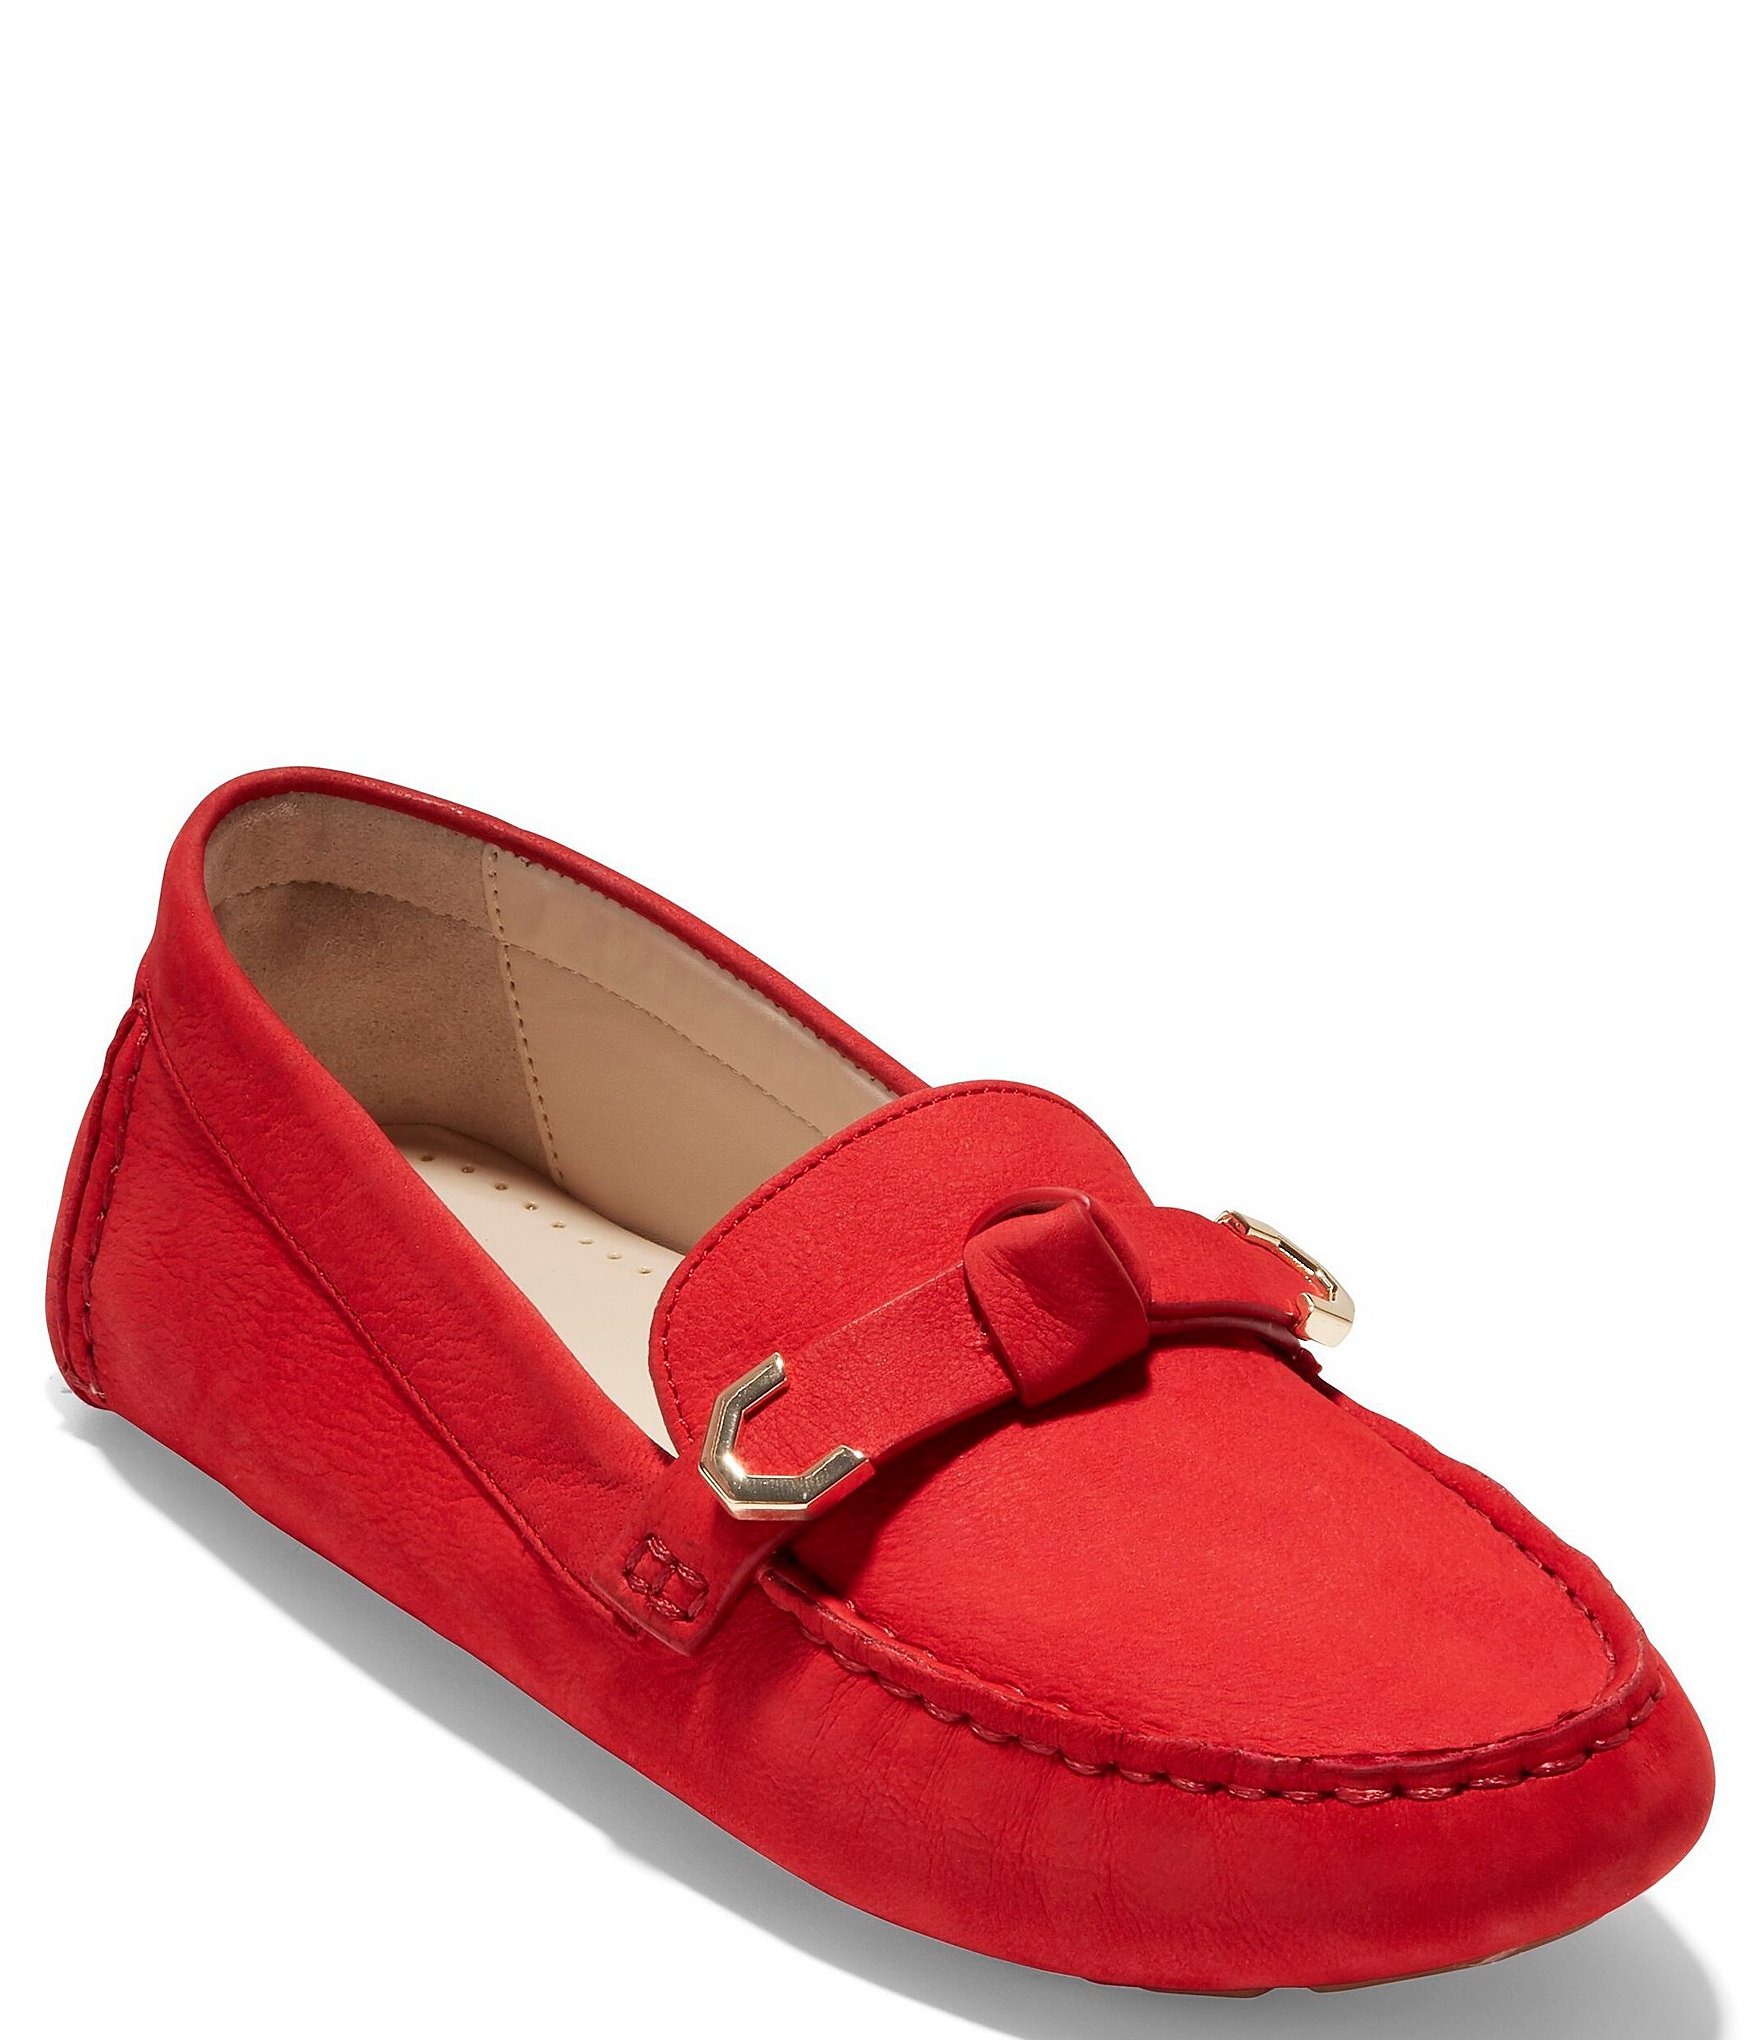 Net Kæreste Abundantly Red Cole Haan Shoes for Women, Men & Kids | Dillard's